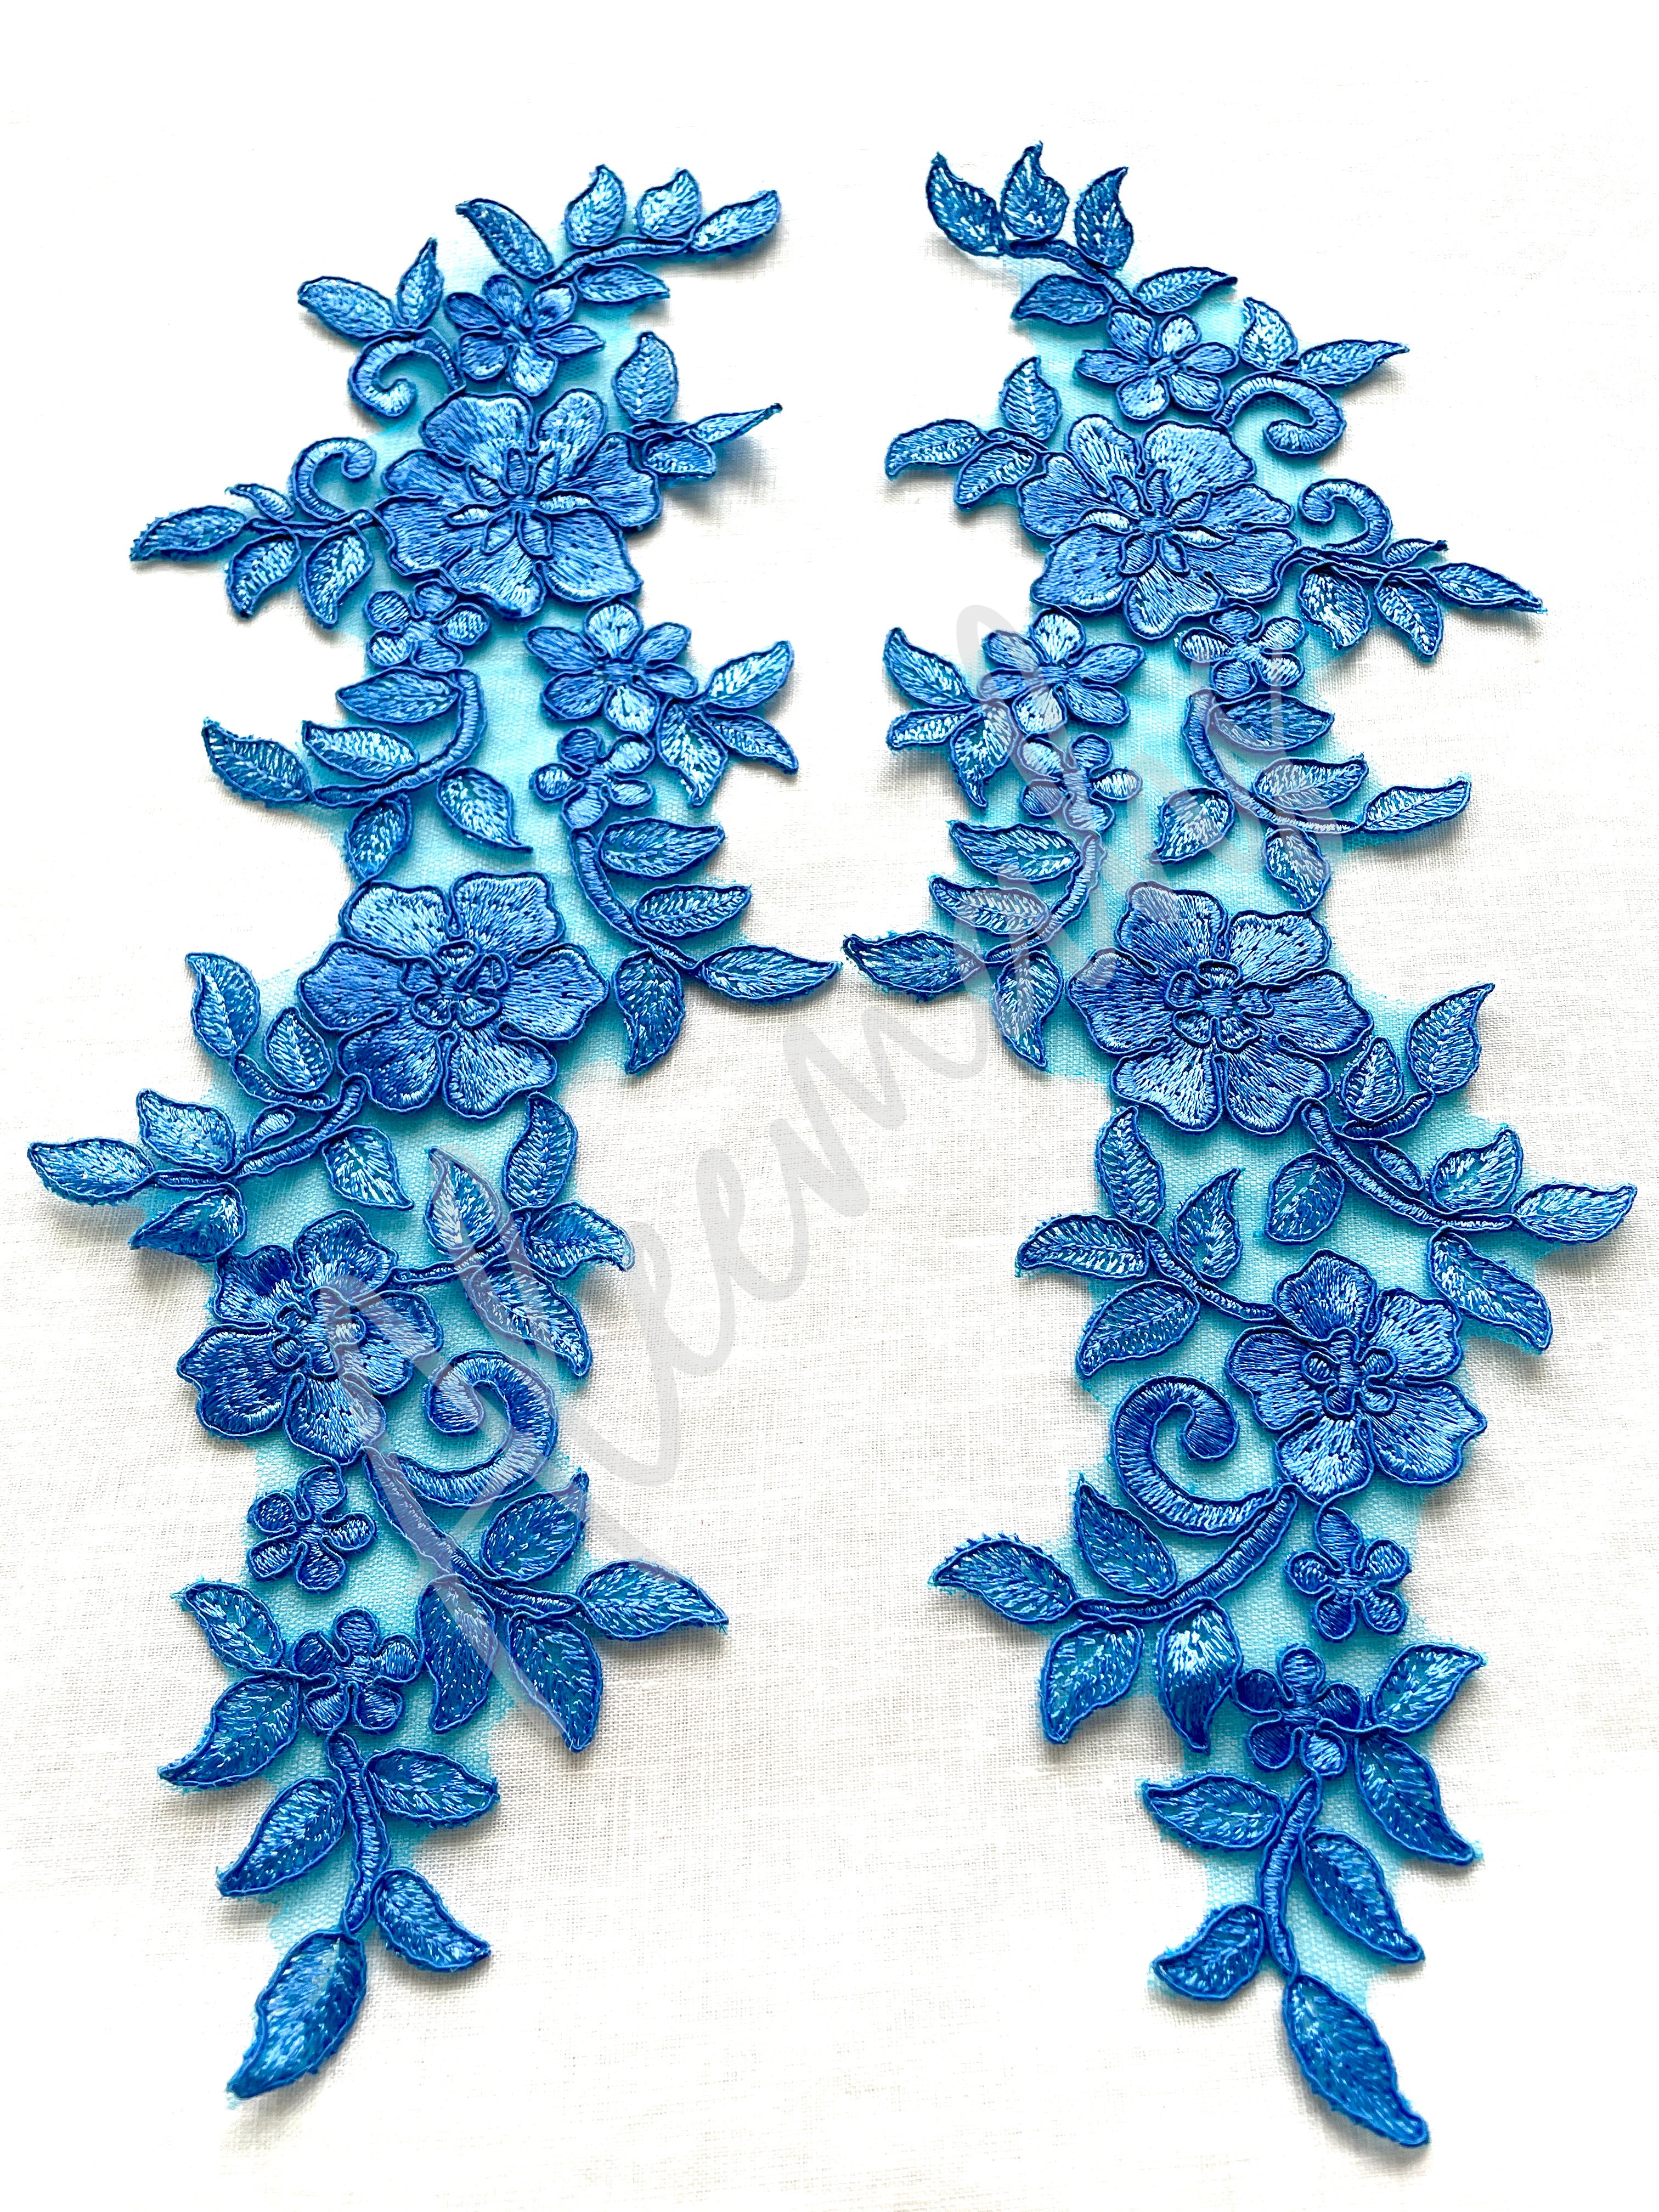 LA-025: Blue lace pair